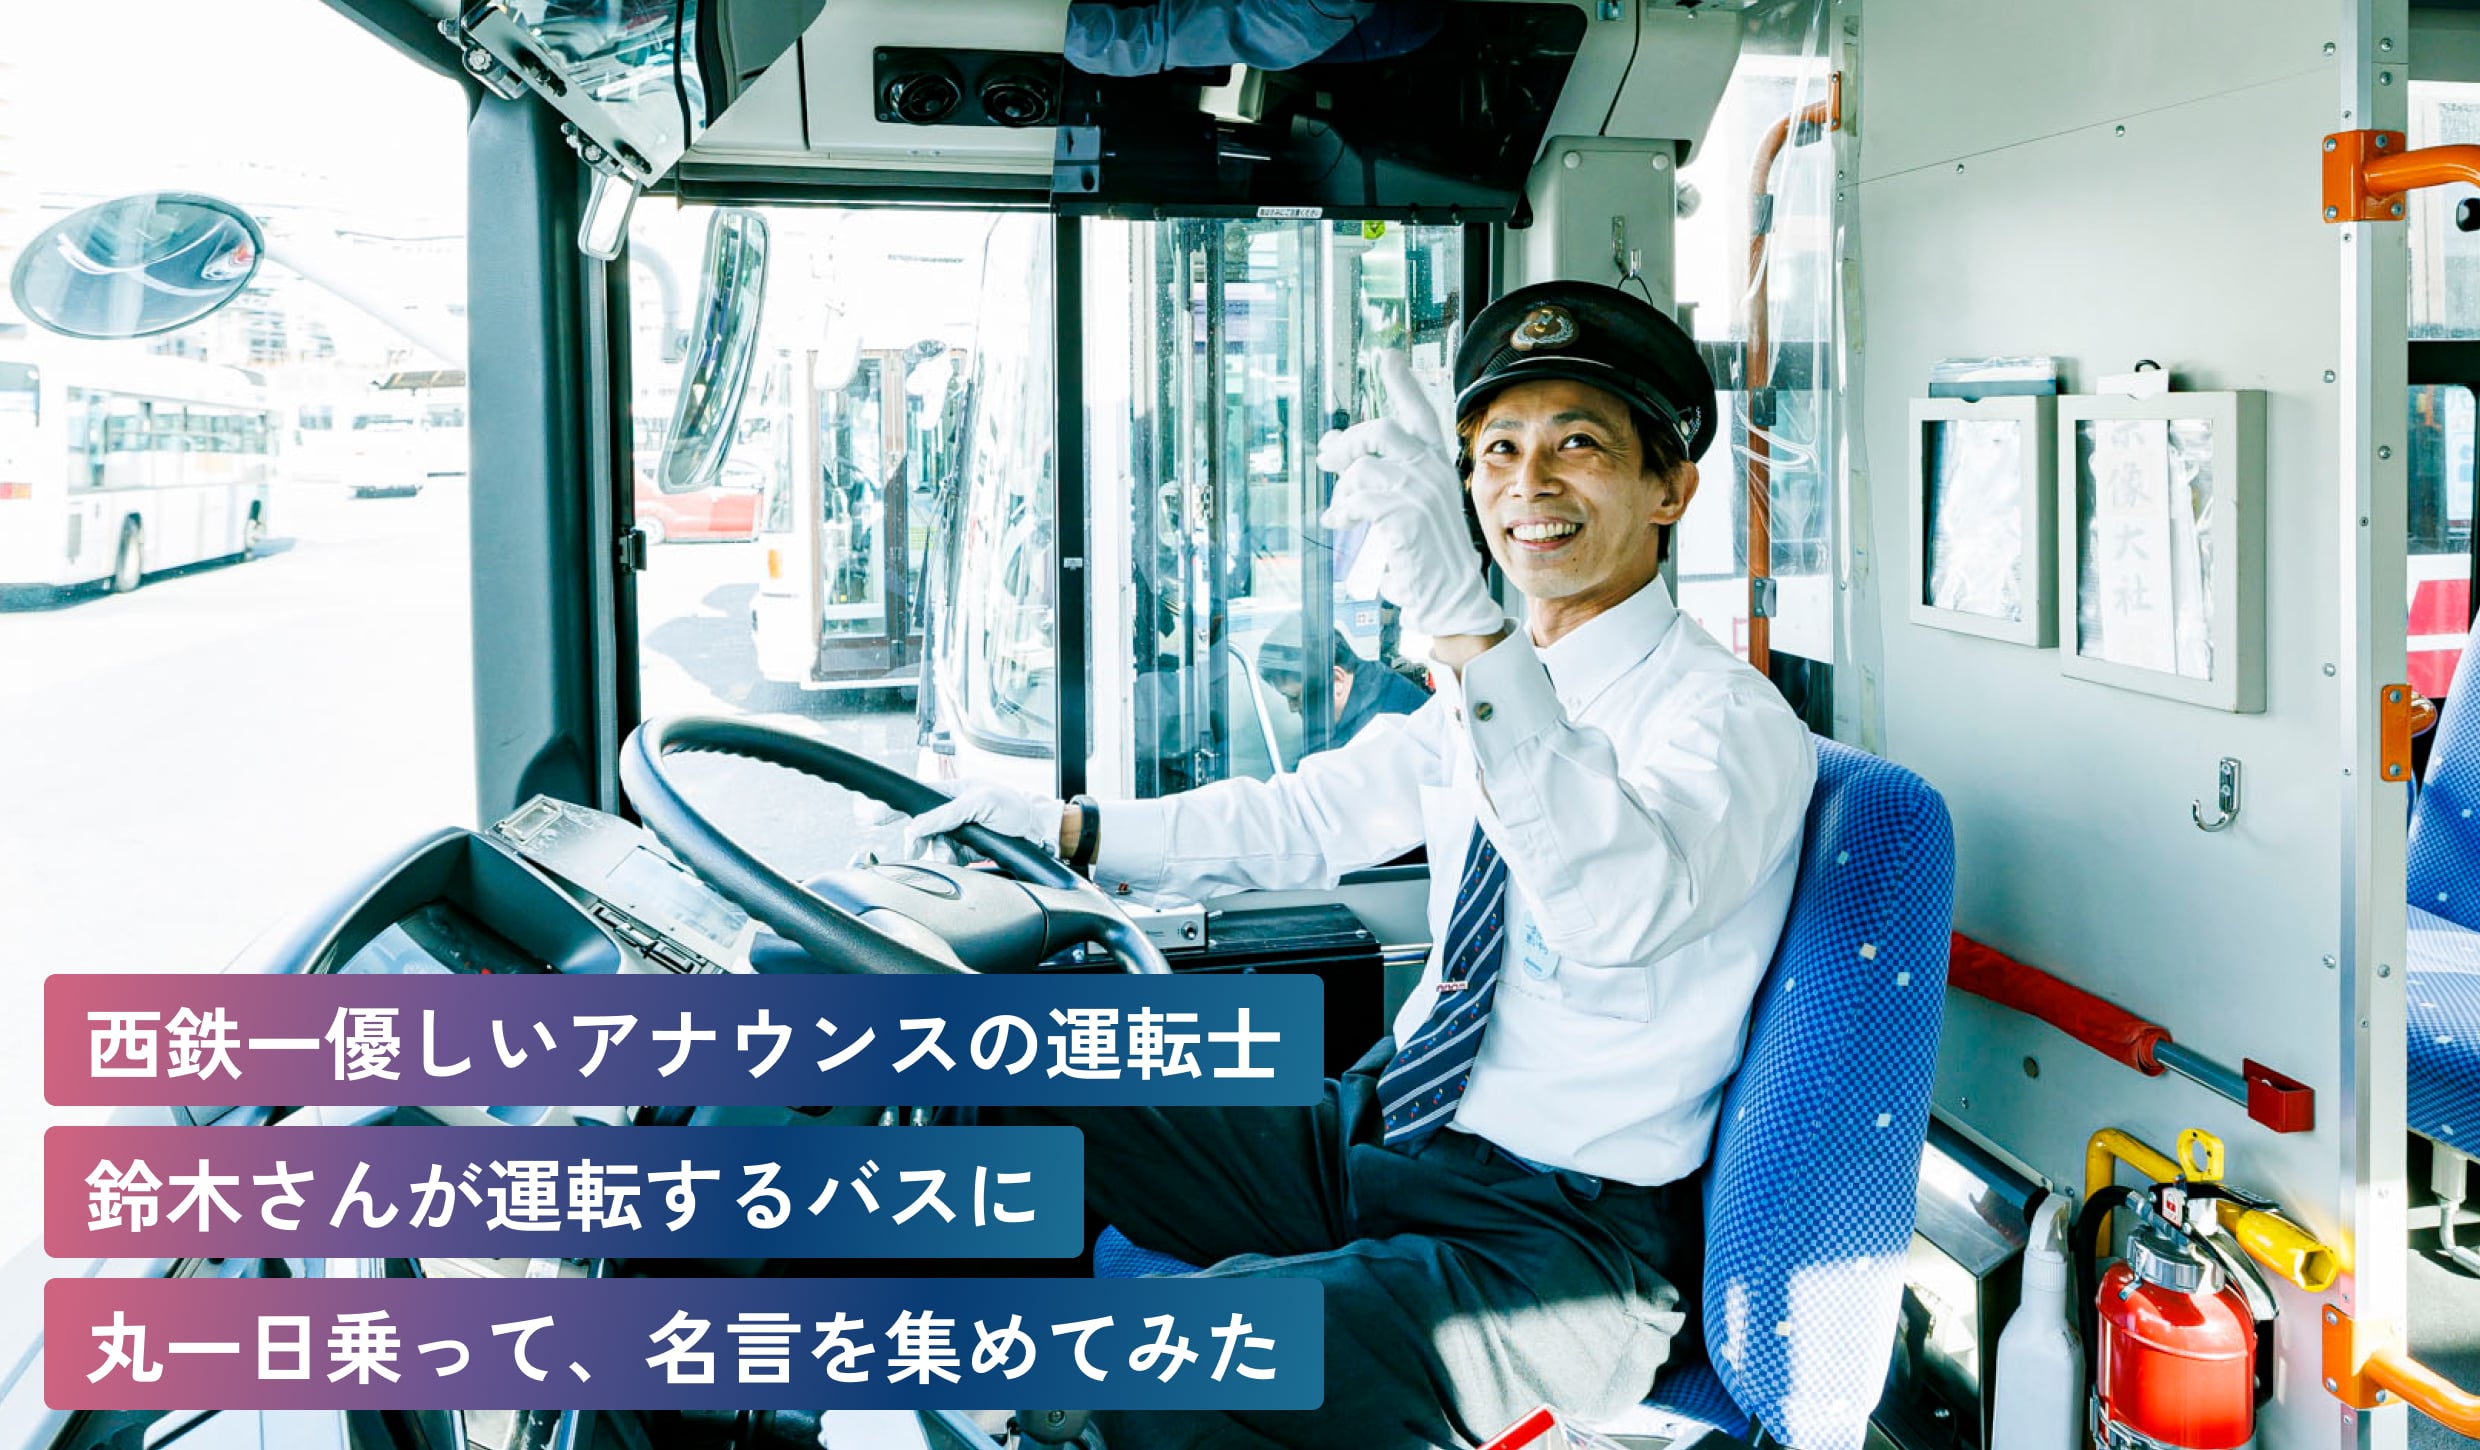 西鉄一優しいアナウンスの運転士
鈴木さんが運転するバスに
丸一日、乗って名言を集めてみた